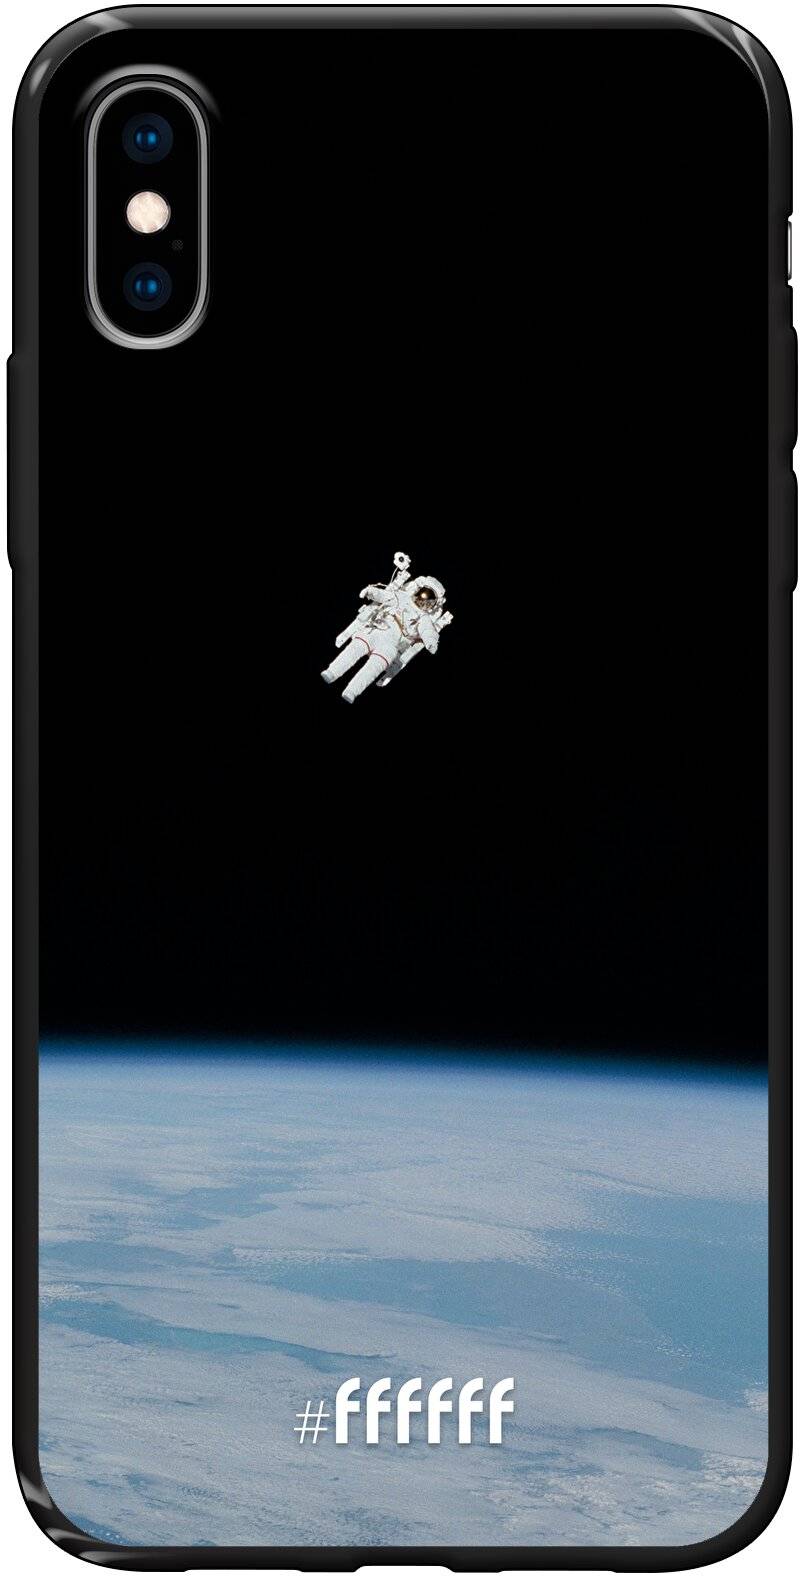 Spacewalk iPhone X